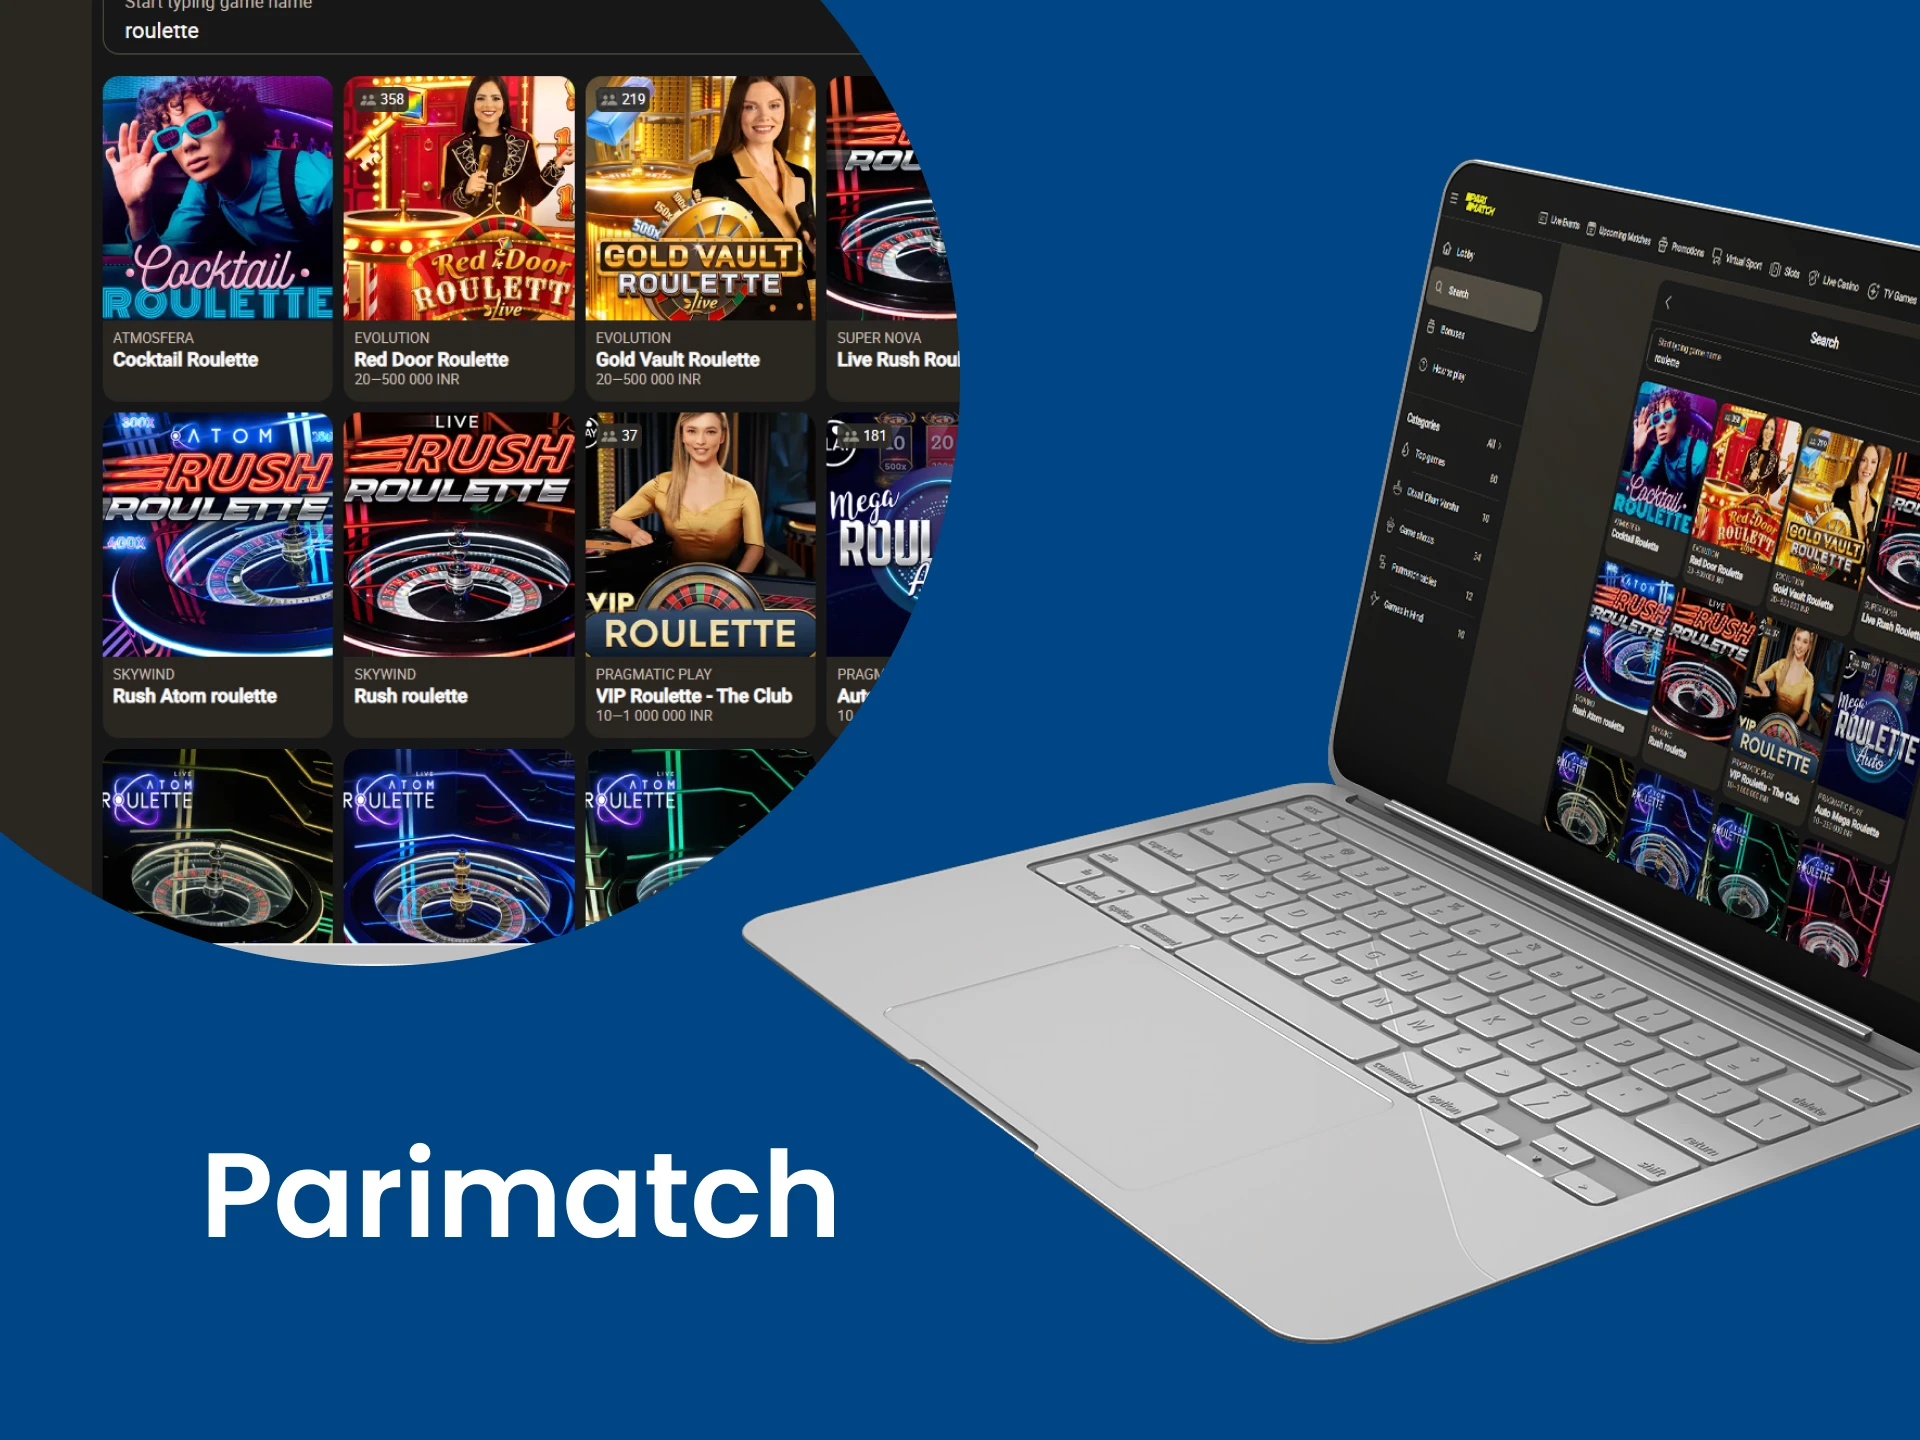 For roulette games, choose Parimatch.